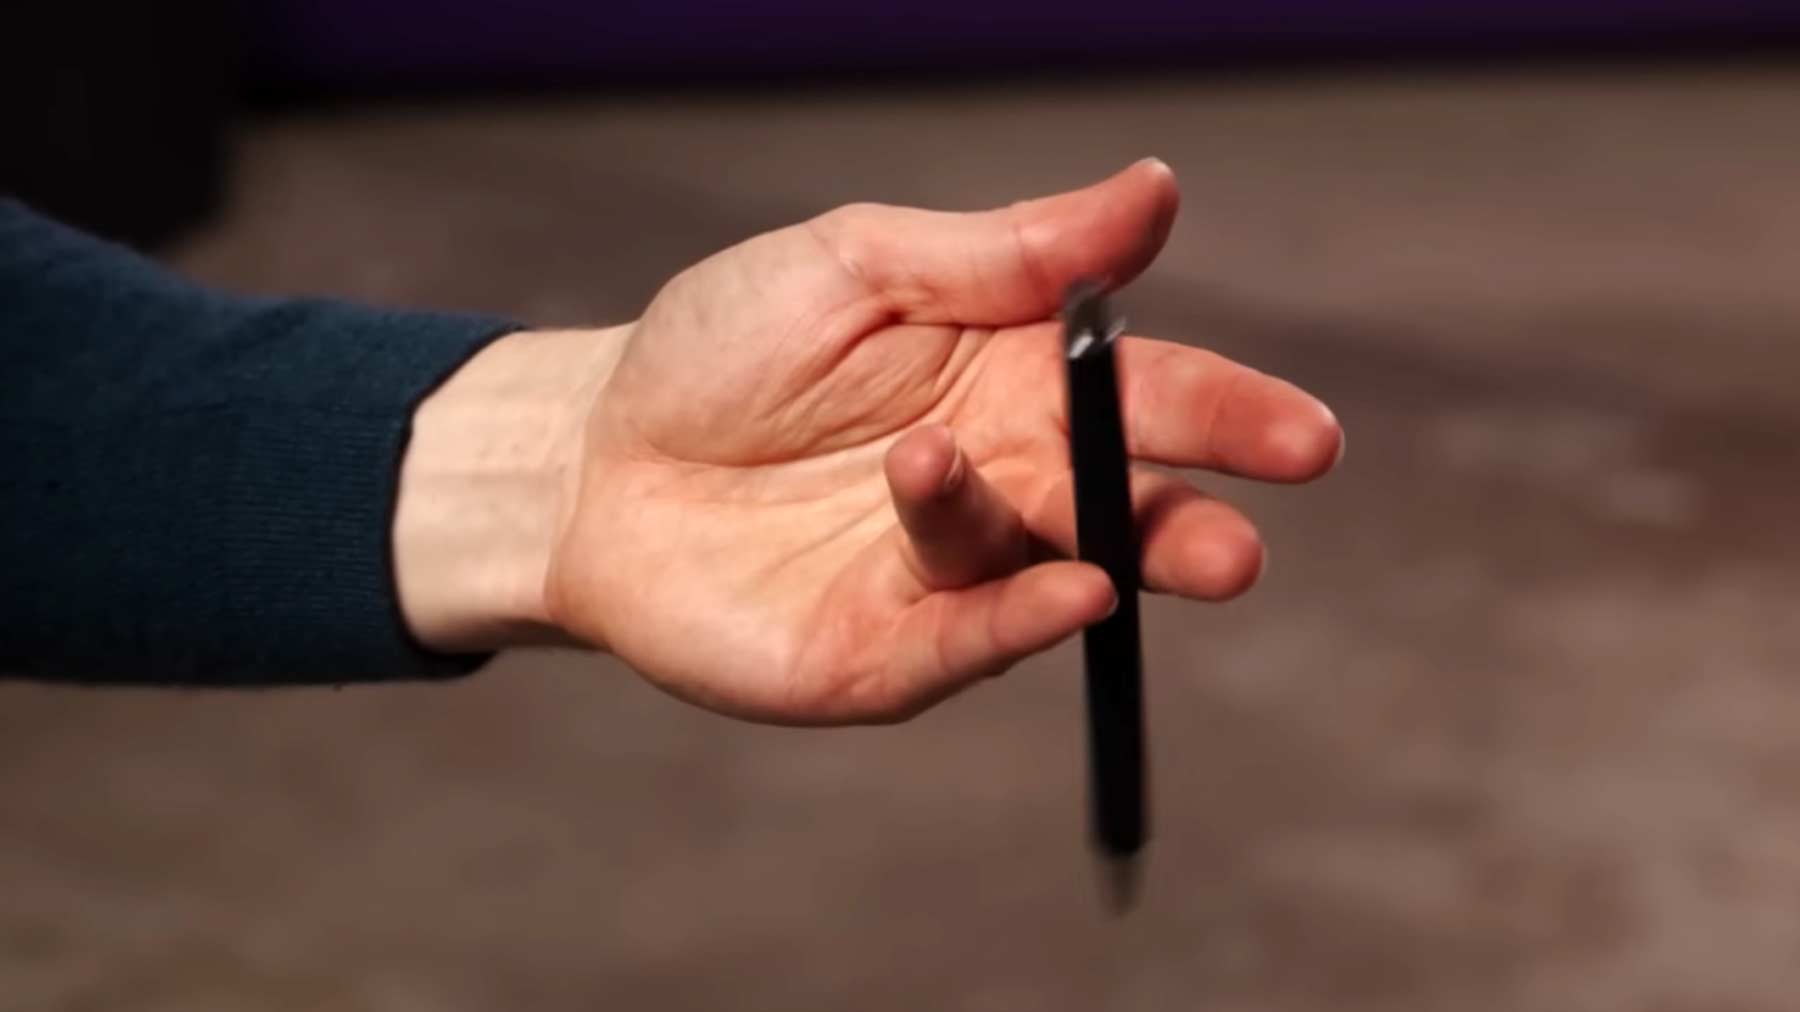 Stift mit den Fingern drehen: Tutorial von einfach bis komplex stiftdrehen-tutorial-mit-finger-hand 